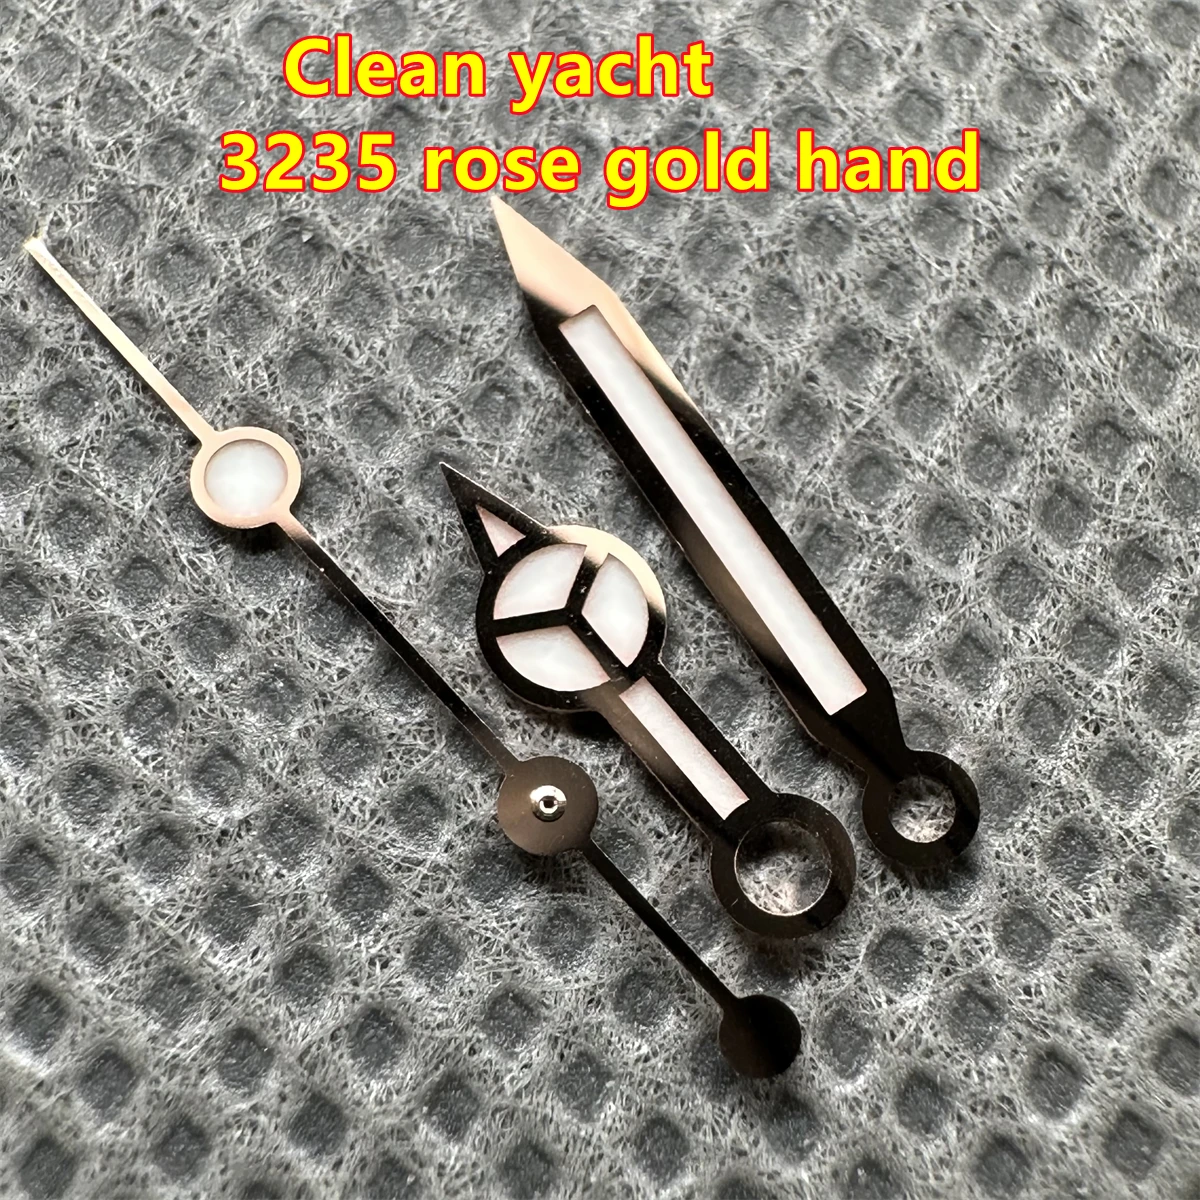 Лучшие качественные чистые заводские ручные детали для часов из розового золота yacht 3235 3135 механизм Blue Luminou 126655 126621 для 40 мм